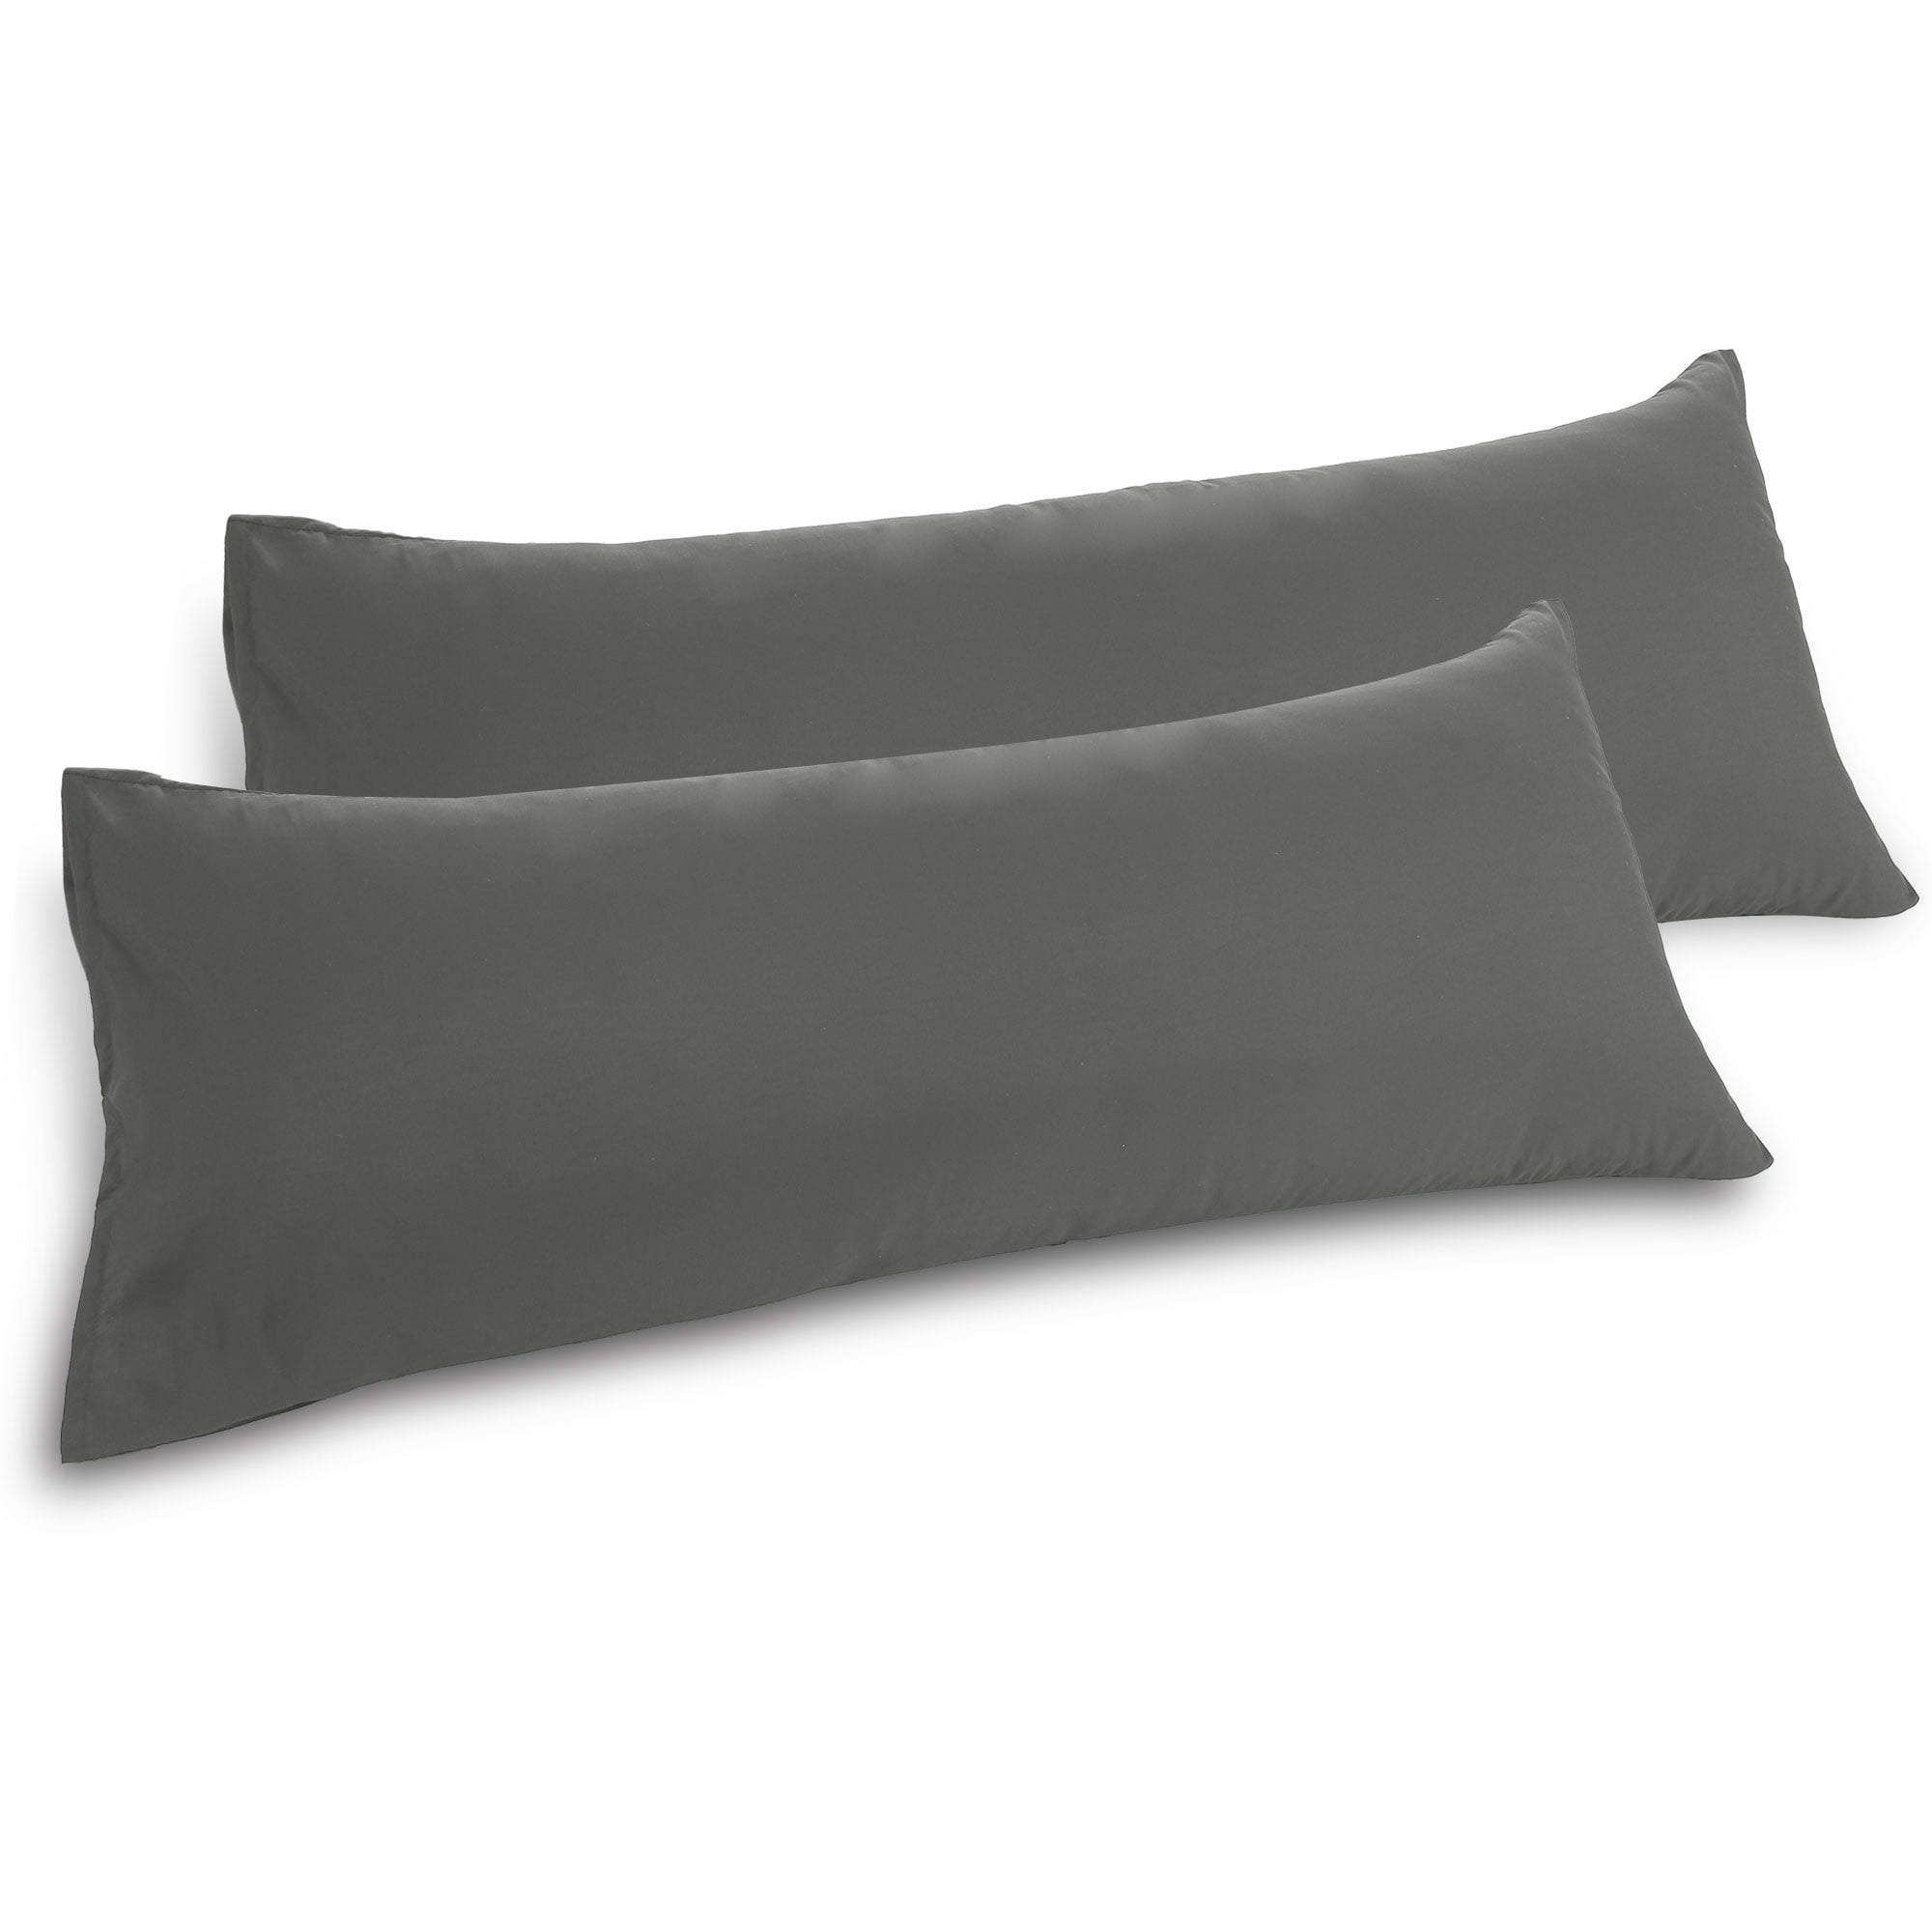 Pillow Case for Body Pillows Grey 